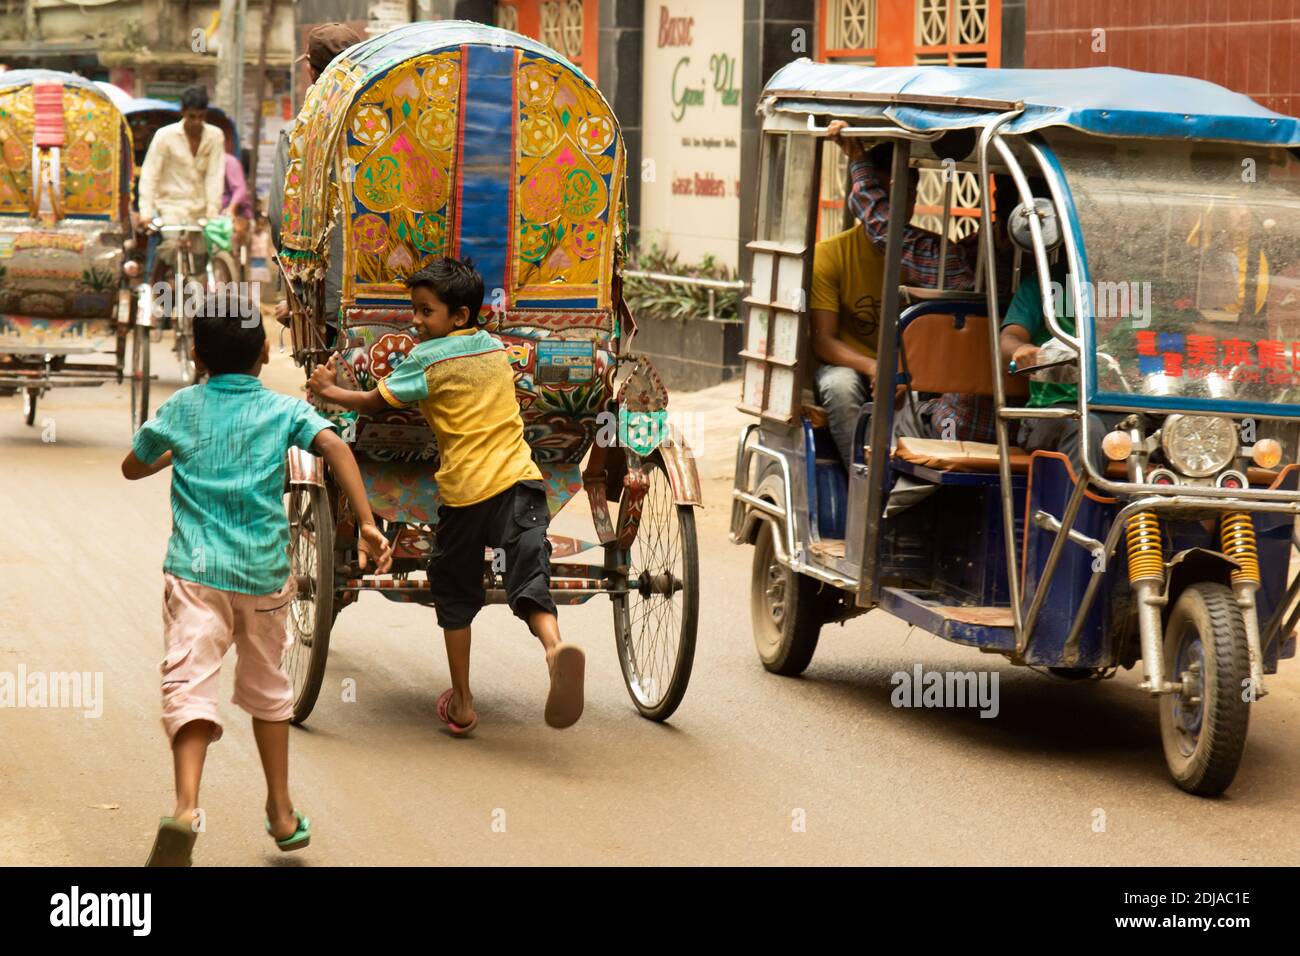 Dhaka, Bangladesh - 28 octobre 2018 : deux enfants jouant et essayant de monter à bord d'un pousse-pousse, le moyen de transport urbain le plus courant. Banque D'Images